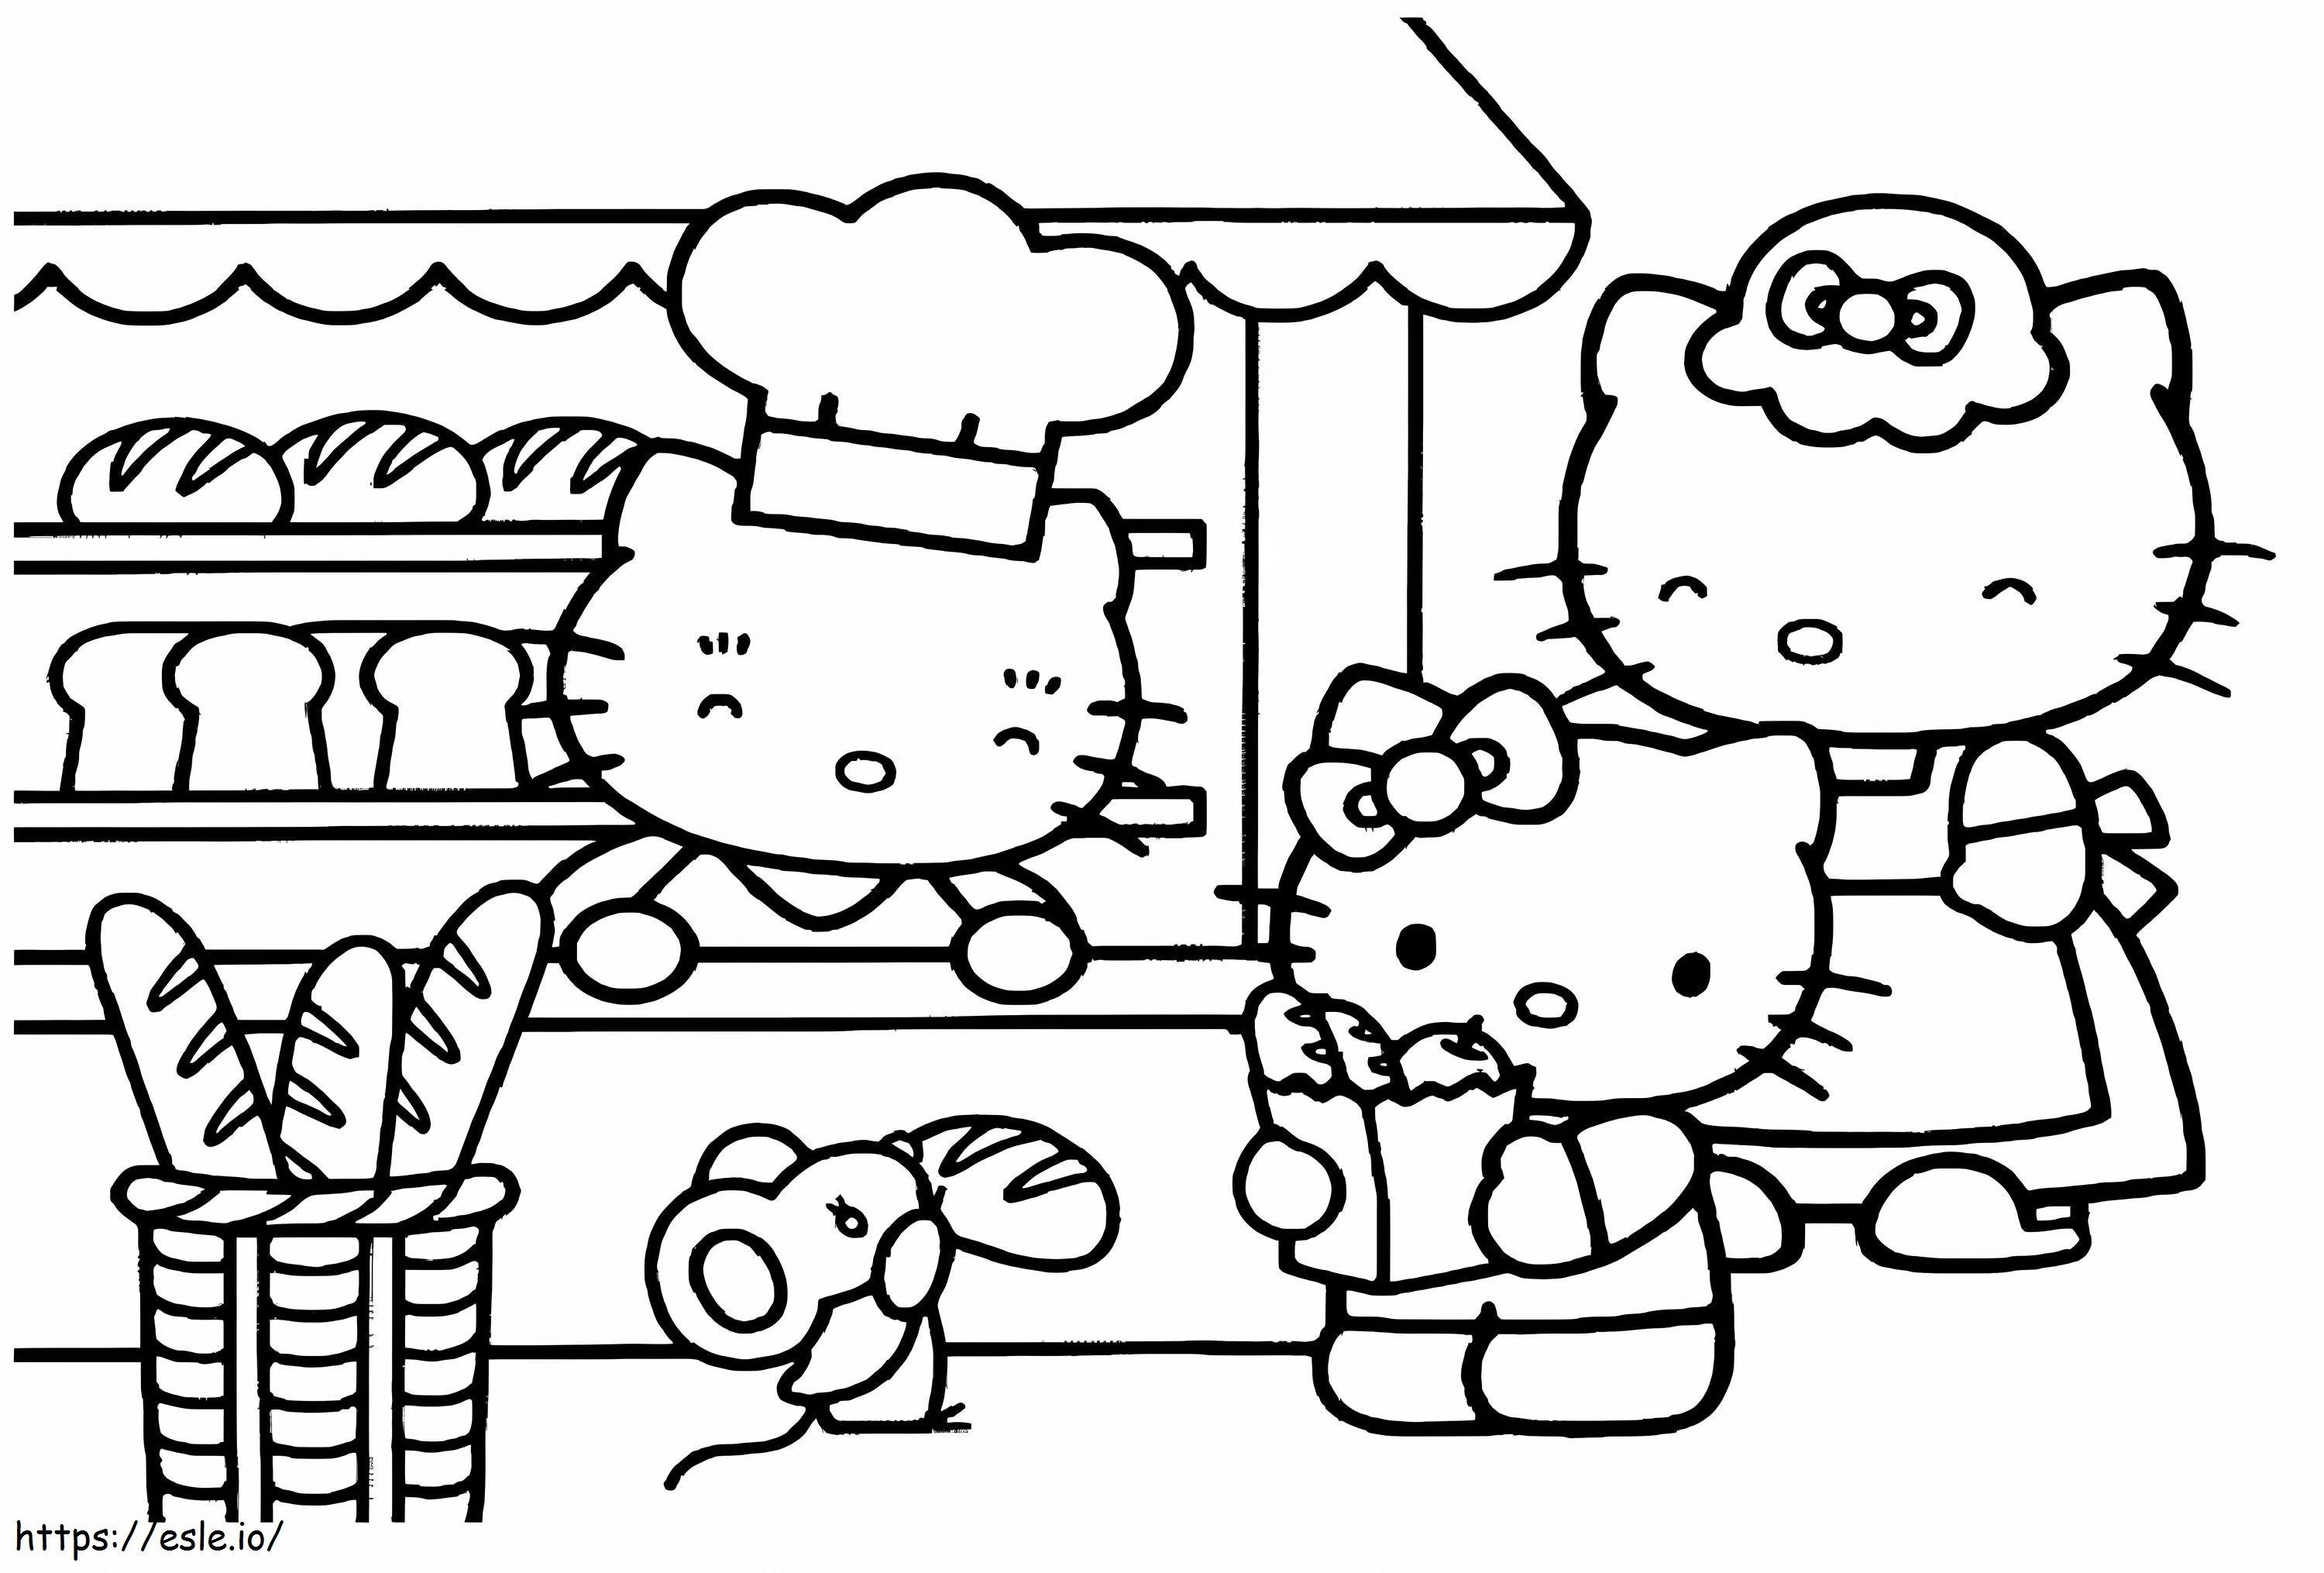 Fırında Hello Kitty'nin Ailesi boyama